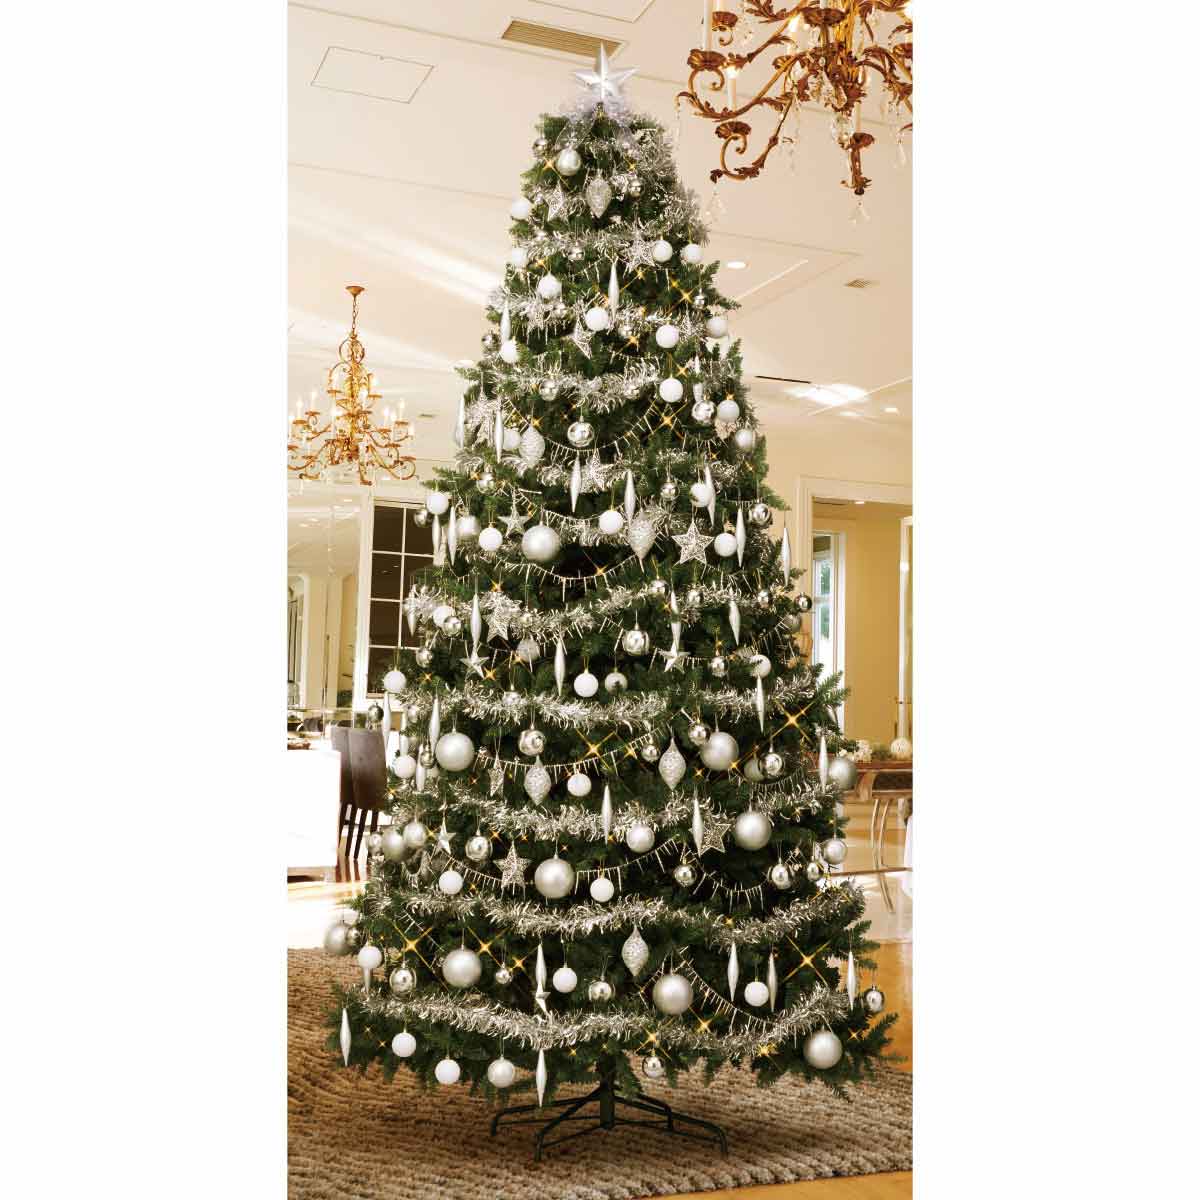 コンチネンタルクリスマスツリーセット シルバー H150xW99cm |クリスマス飾り通販 ストエキ